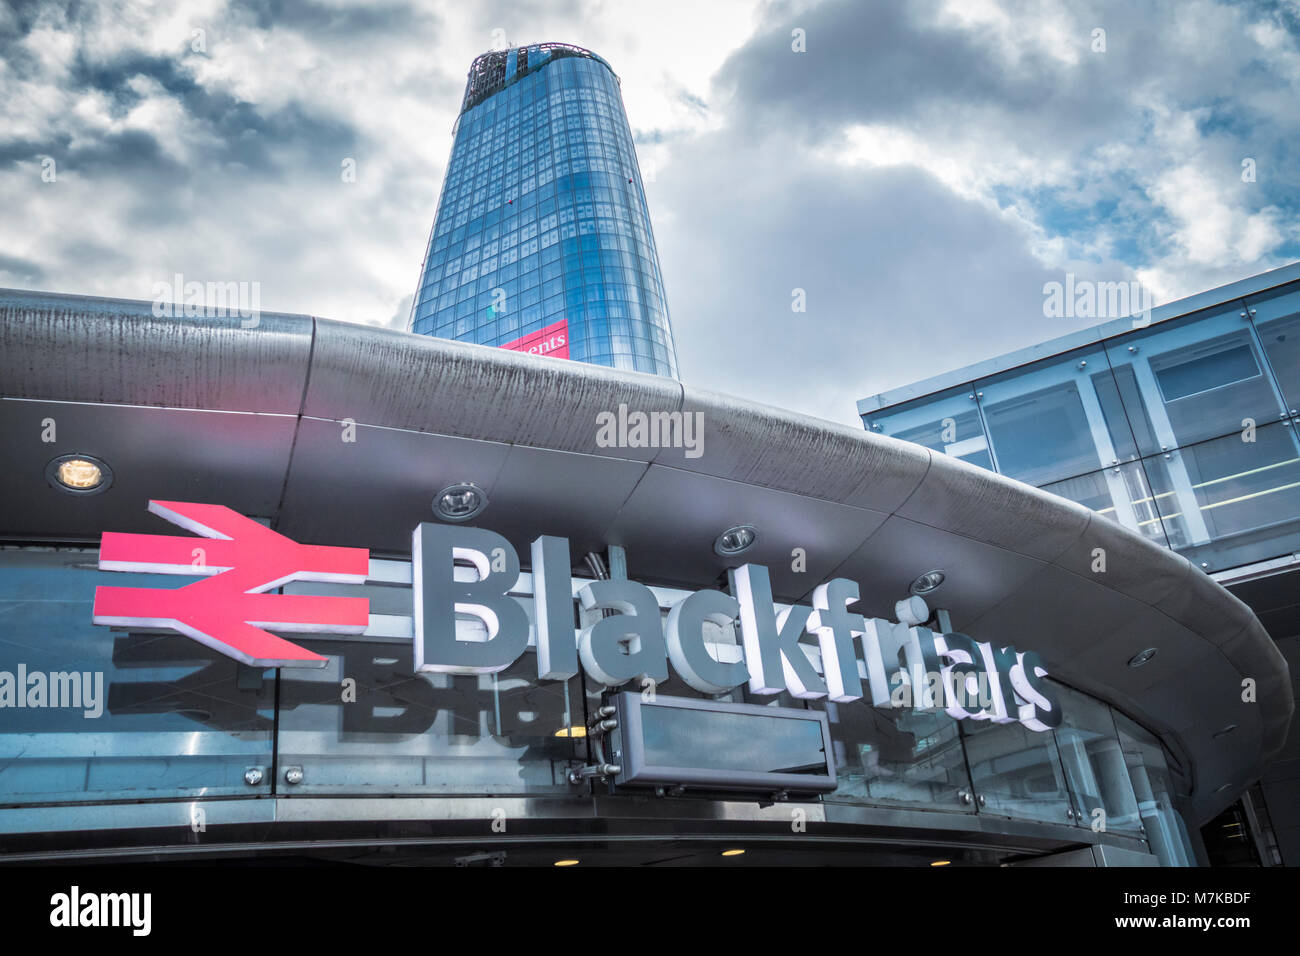 L'un gratte-ciel de Blackfriars plane sur Blackfriars Bridge station, entrée sud, Londres, UK Banque D'Images